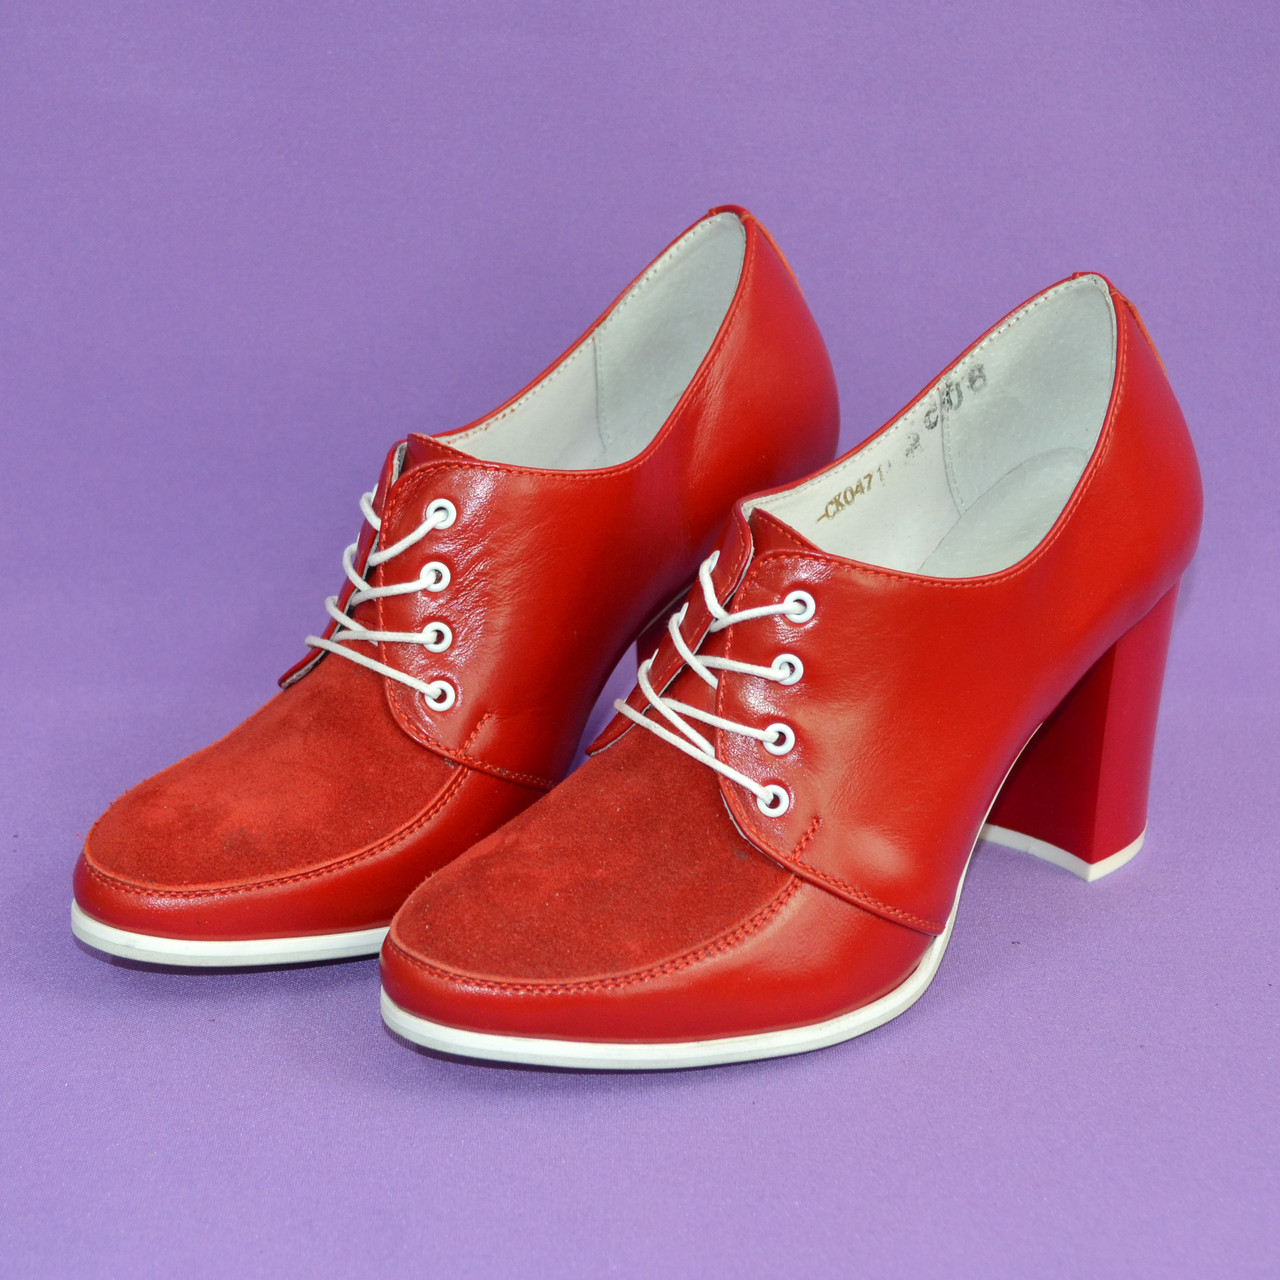 Женские классические красные туфли на высоком каблуке, натуральная кожа и замша, фото 3